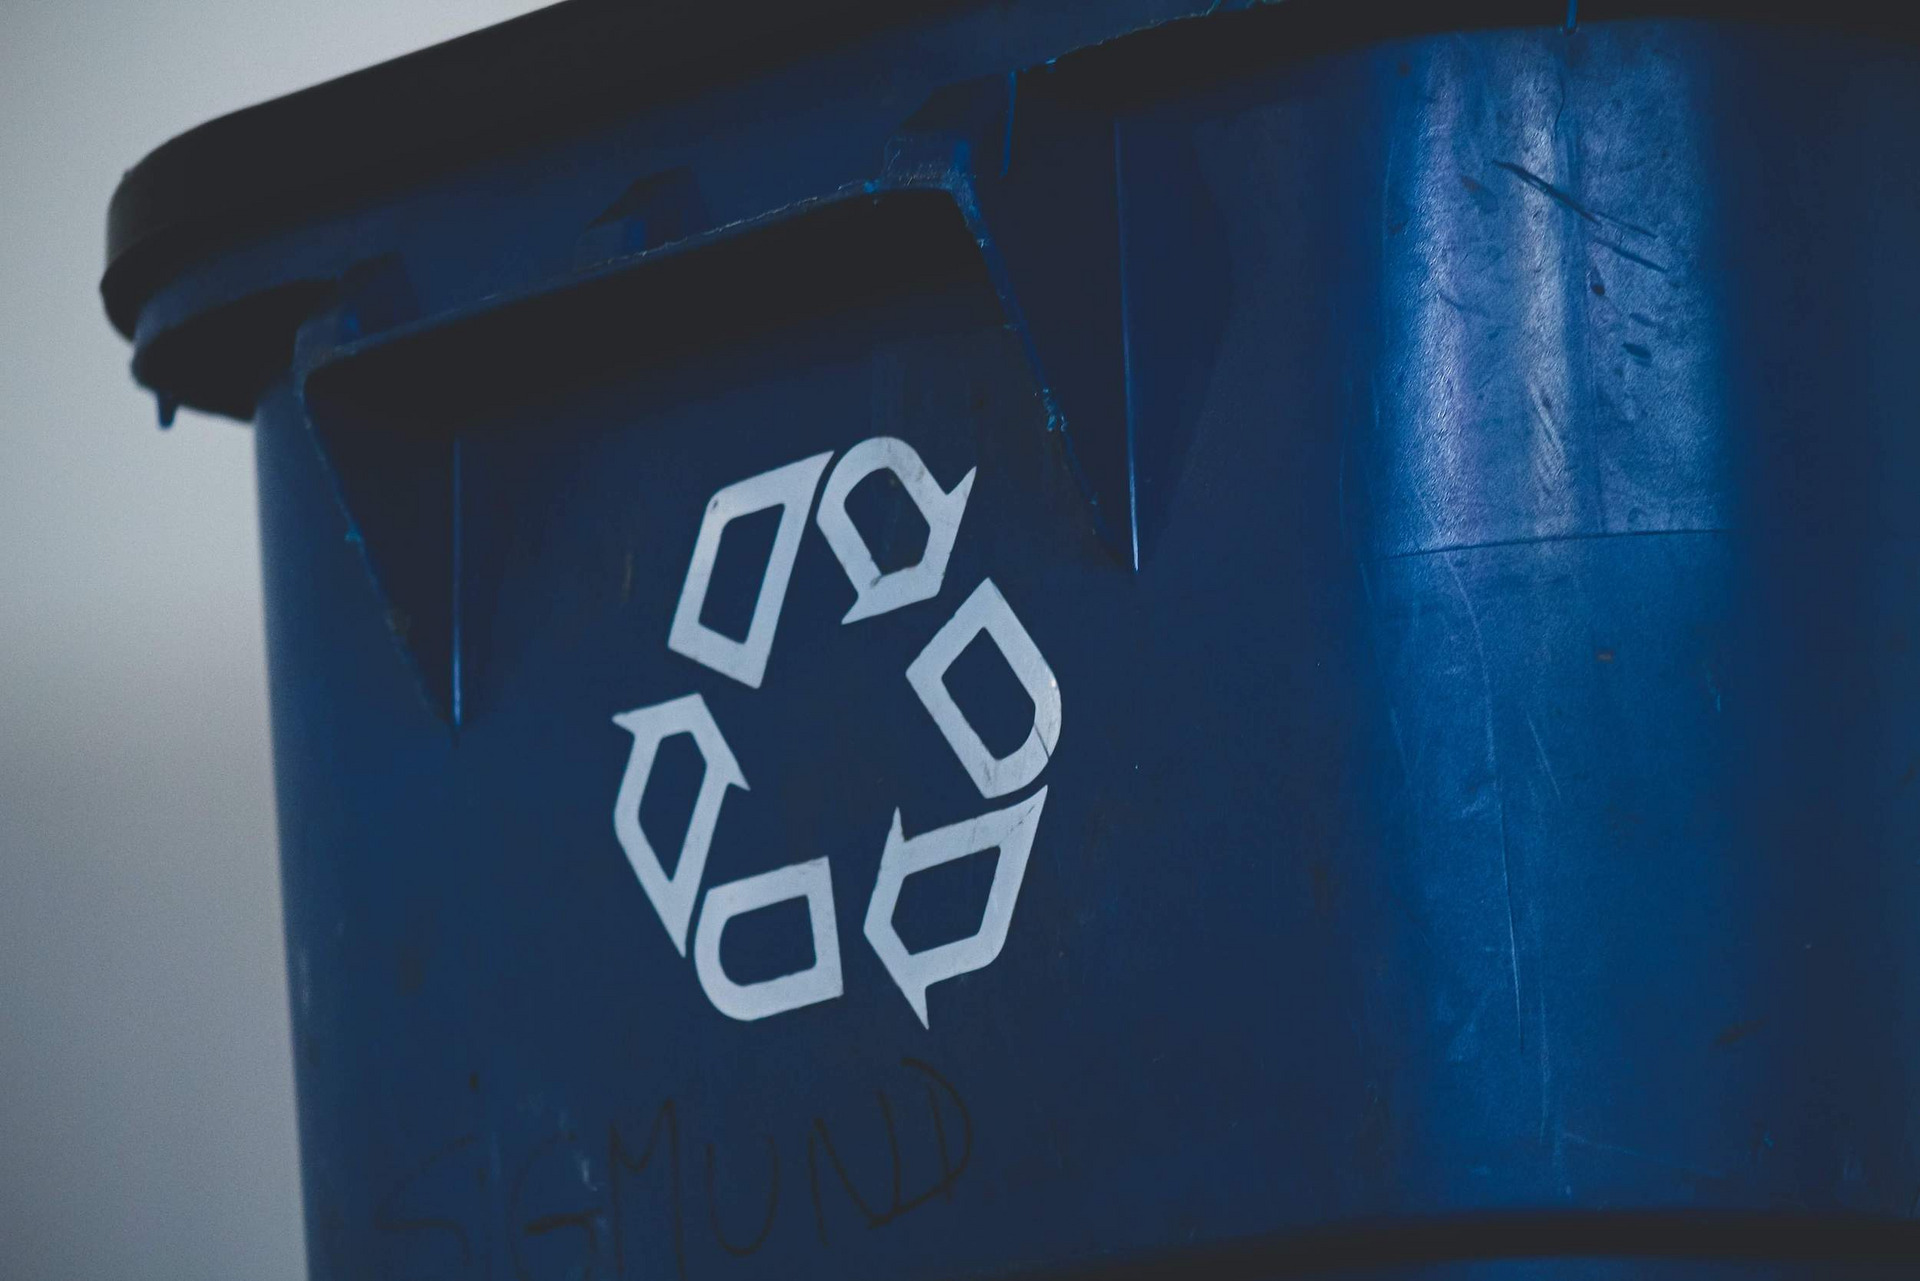 Eine blaue Mülltonne, auf die das Recyclingsymbol gedruckt ist, drei ineinander übergehende Pfeile, die den Verwertungskreislauf widerspiegeln sollen